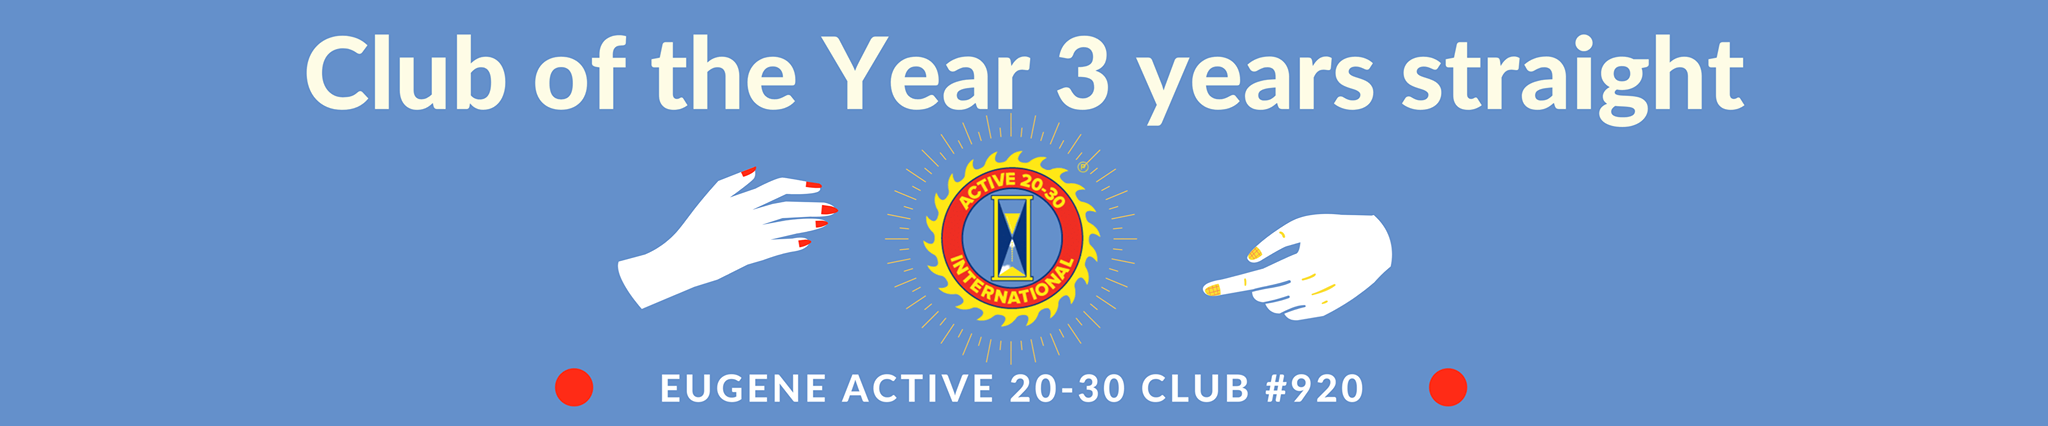 Eugene Active 20-30 Club